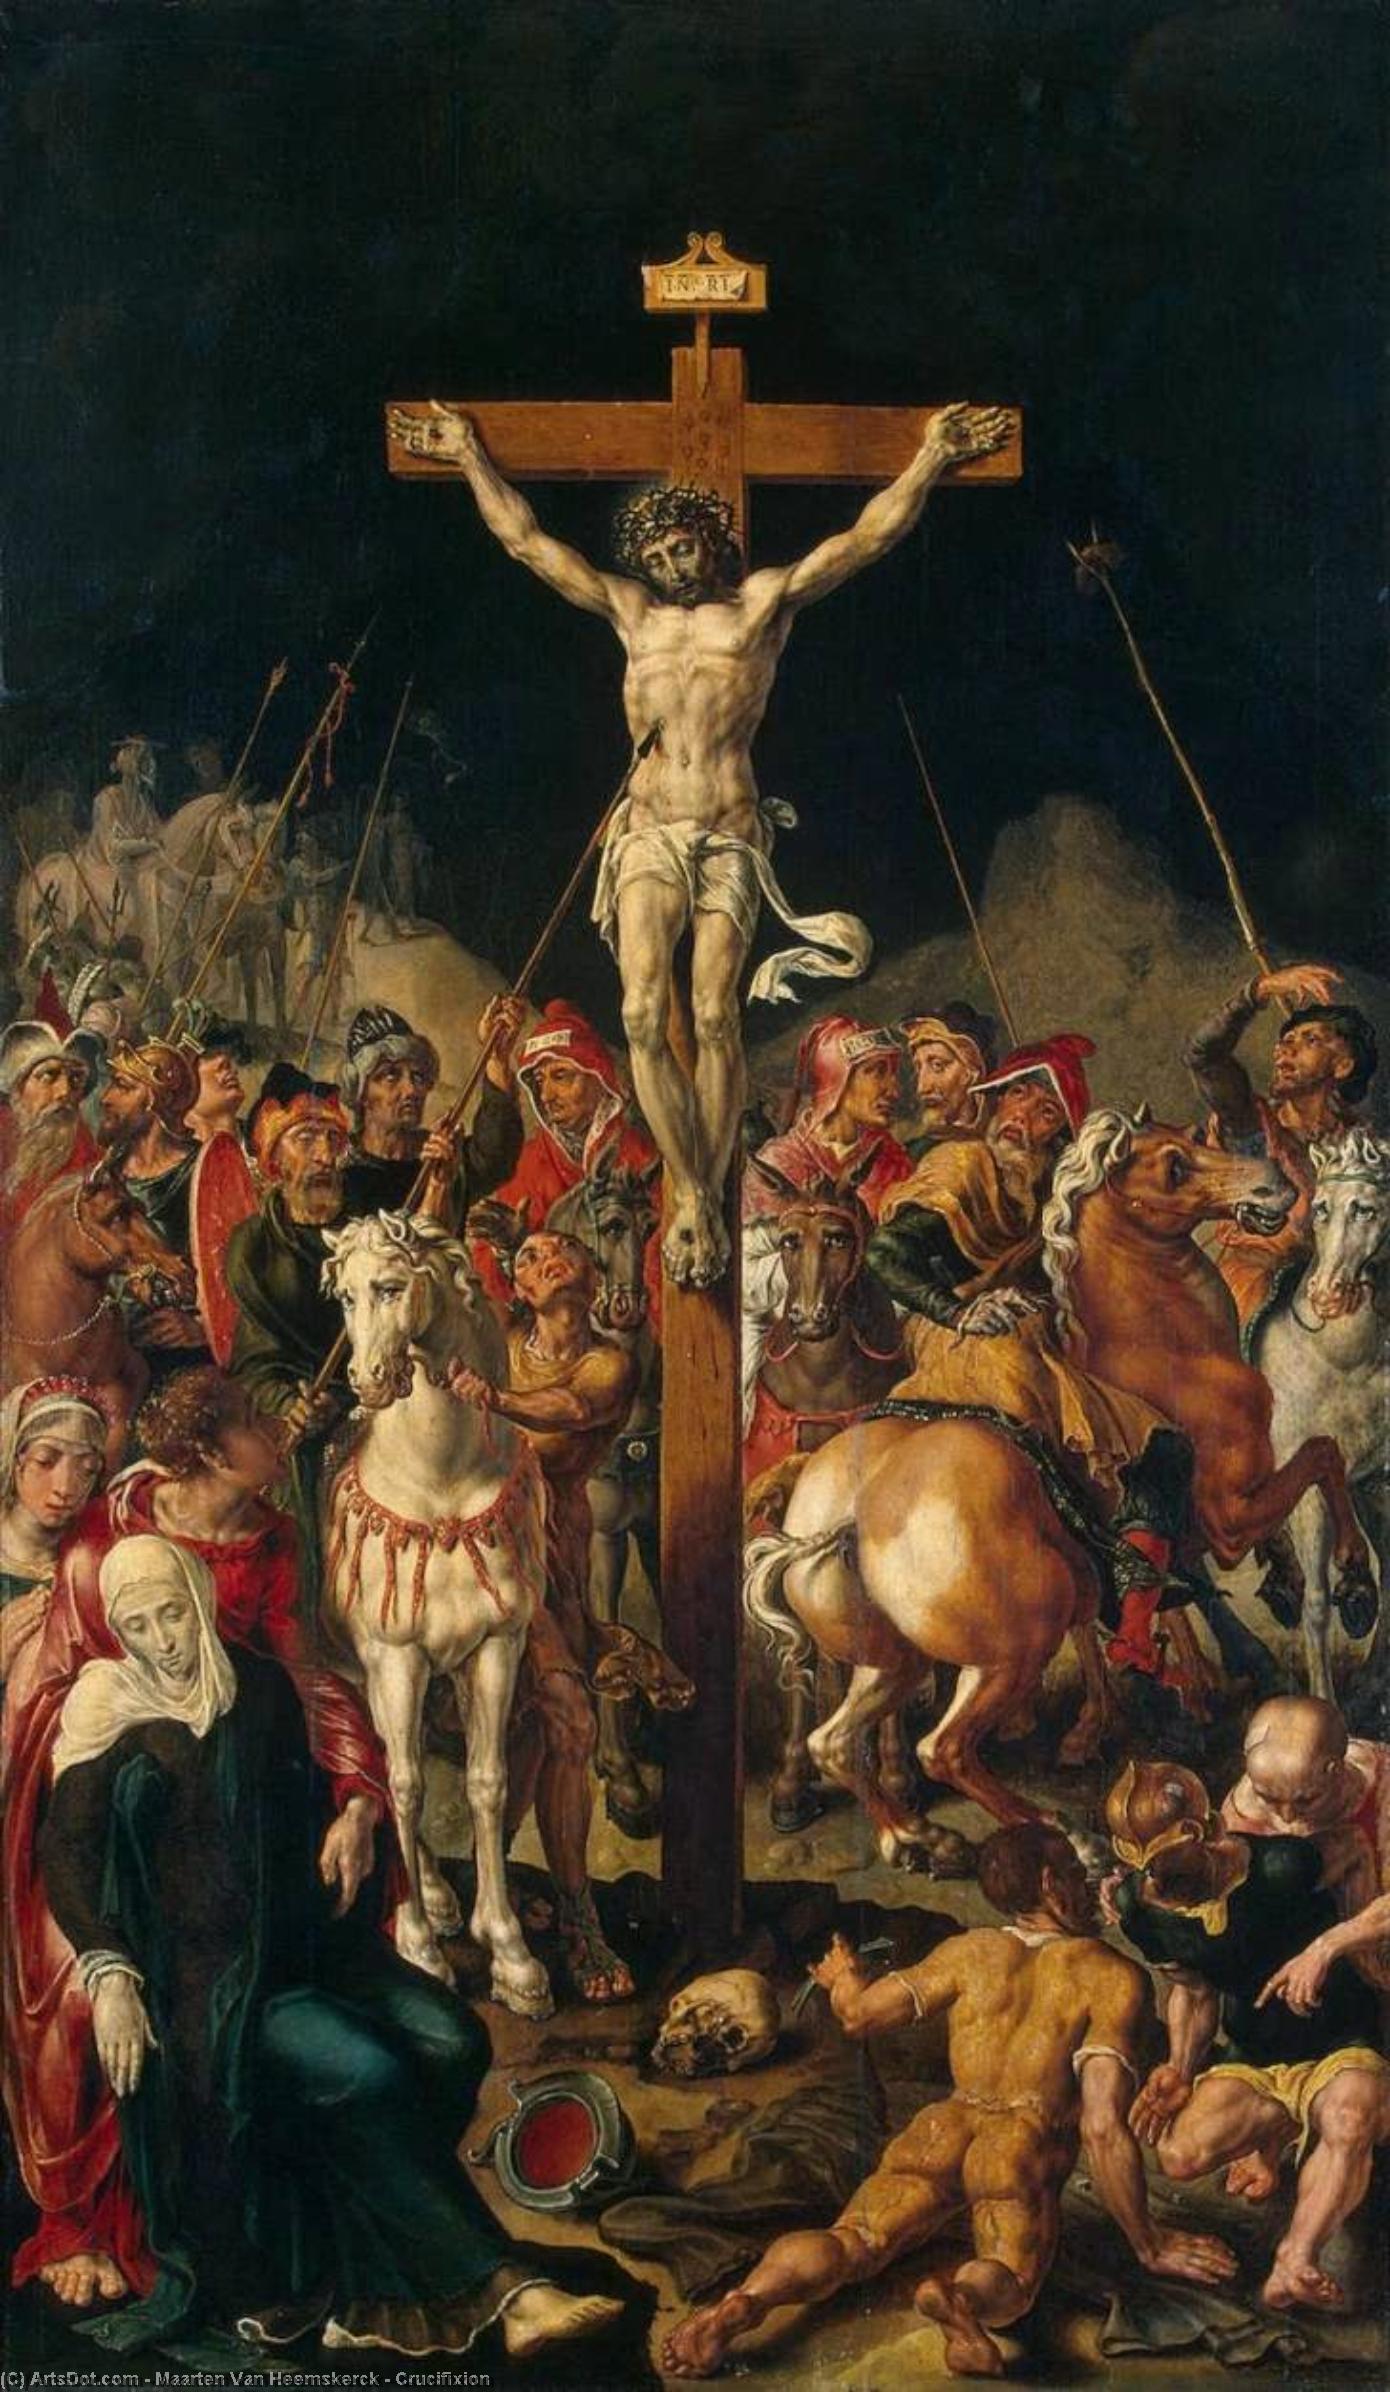 WikiOO.org - Enciclopédia das Belas Artes - Pintura, Arte por Maarten Van Heemskerck - Crucifixion